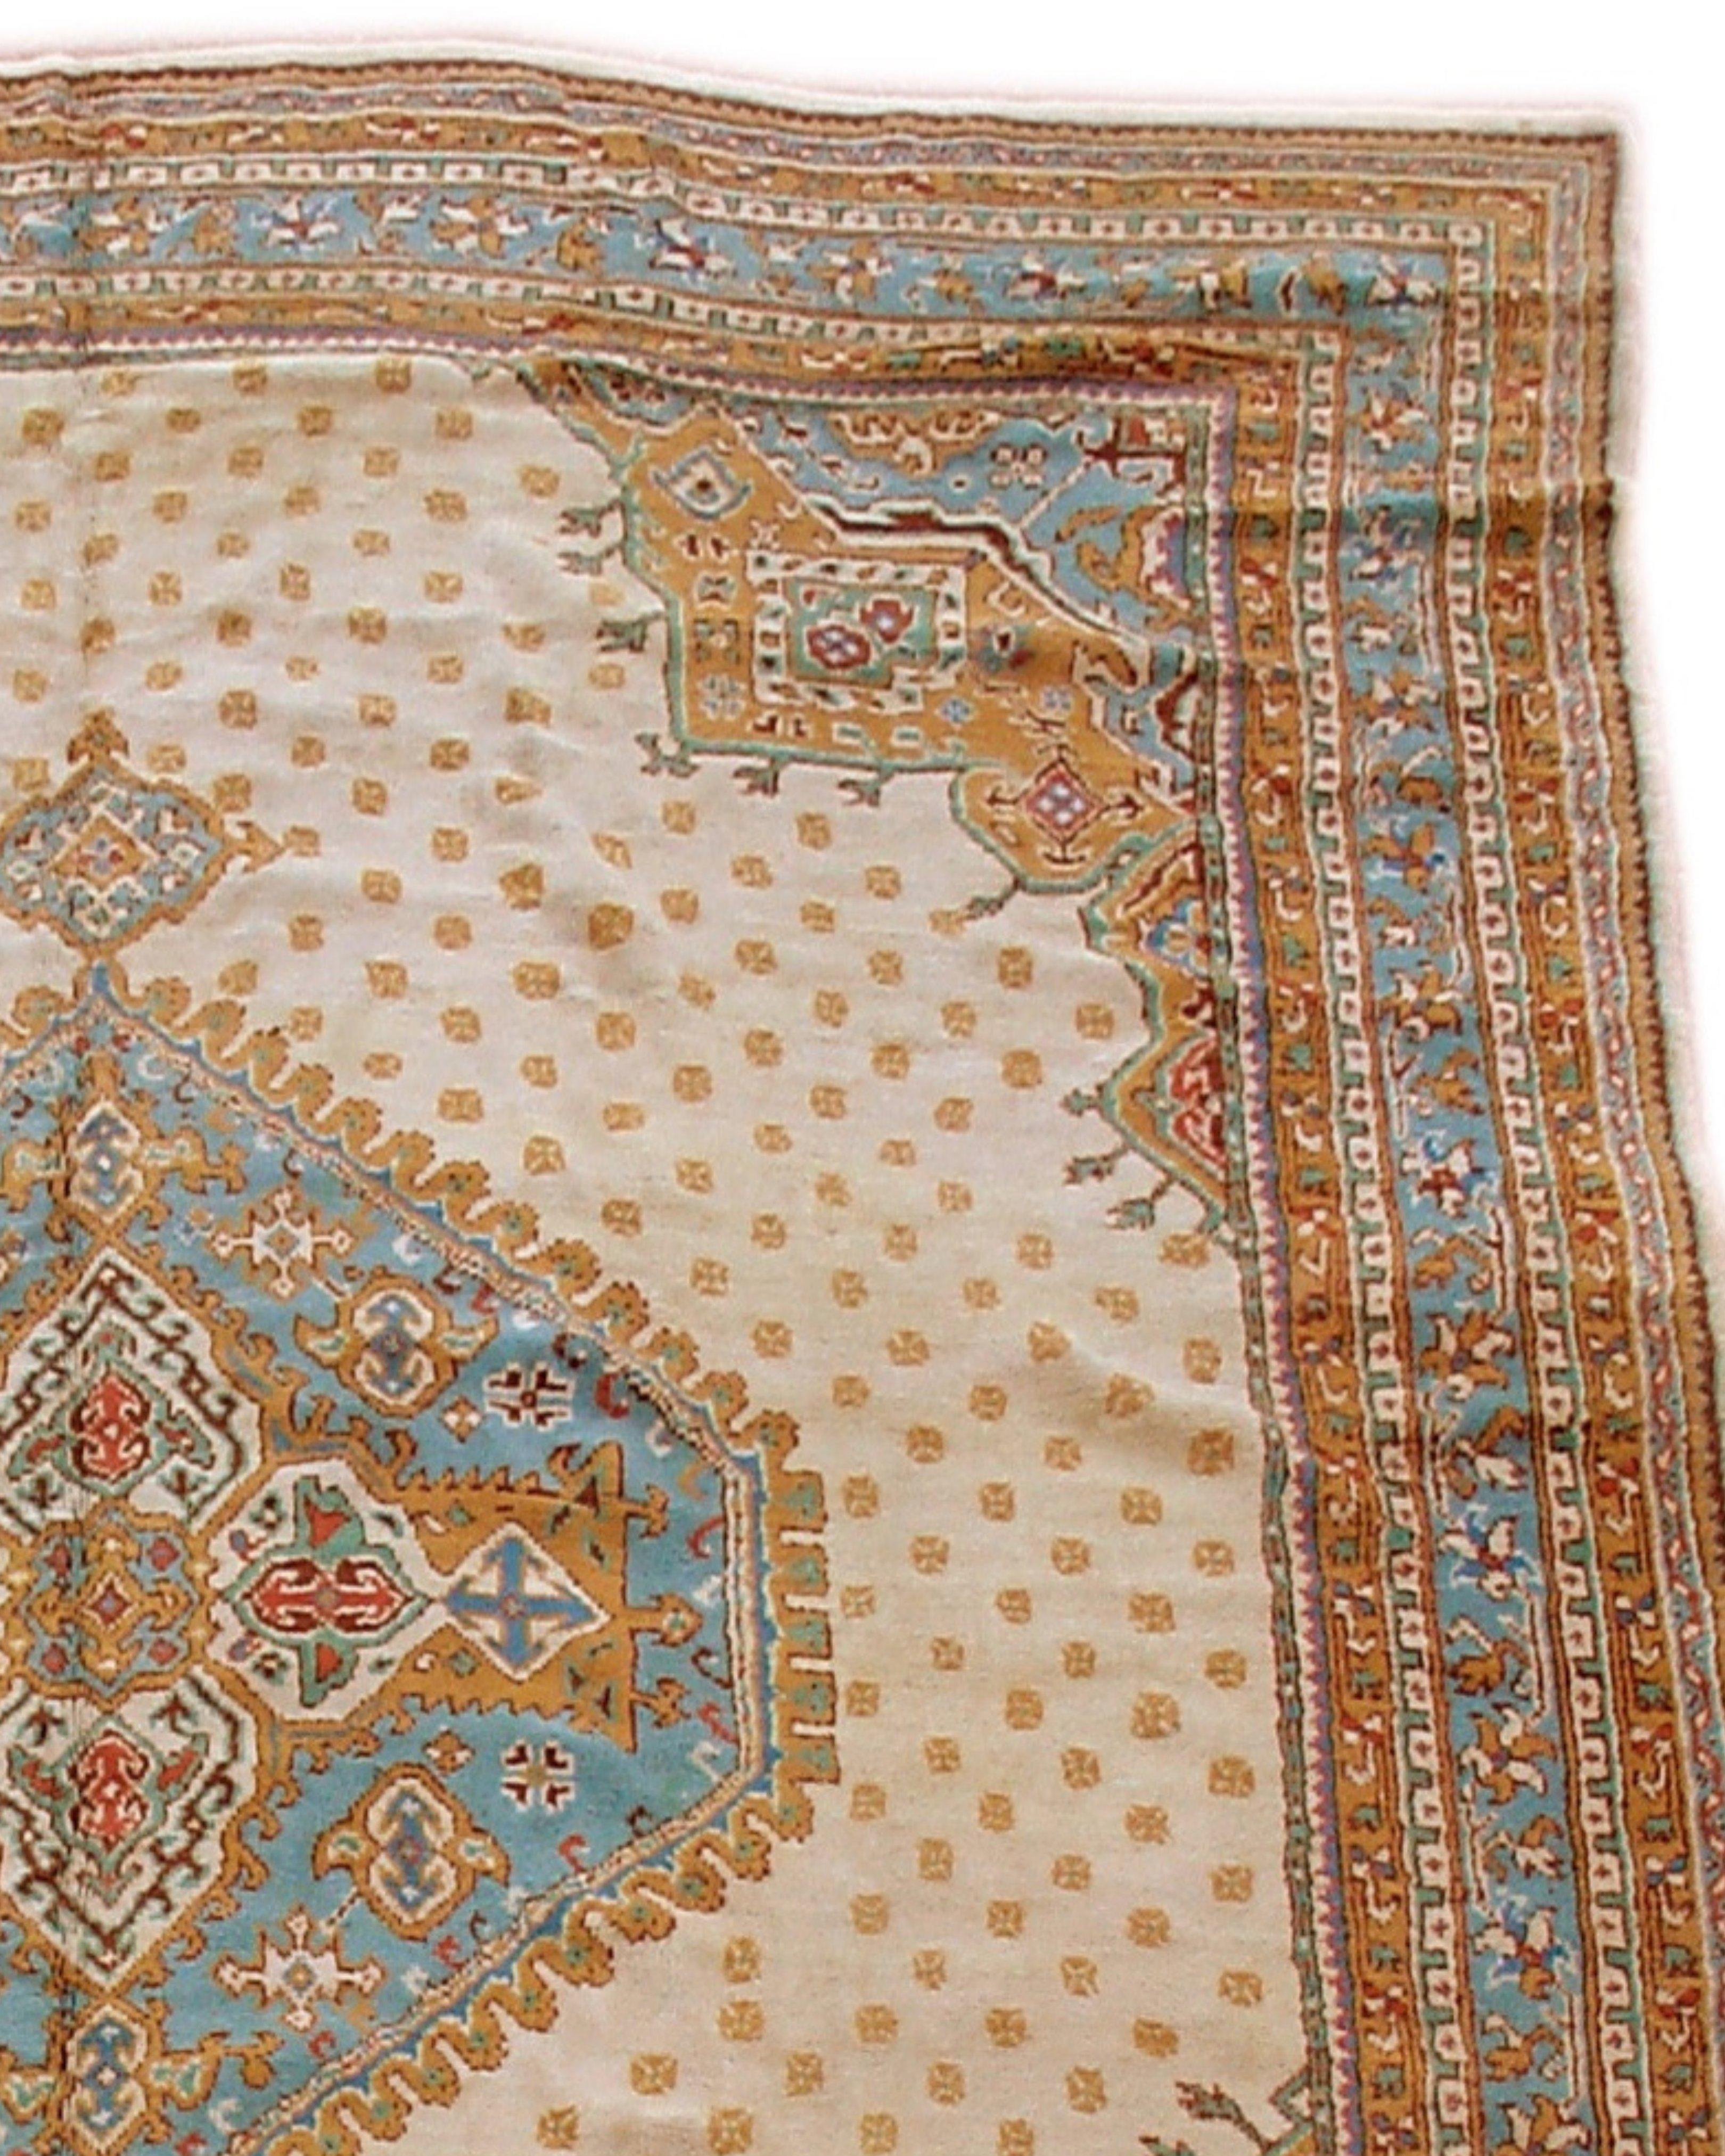 Antiker großer anatolischer türkischer Oushak-Teppich, Anfang 20.

Oushak-Teppiche wurden um die Jahrhundertwende auf den westlichen Märkten populär und wurden von verschiedenen Webereien in und um die westanatolische Stadt Ushak in Auftrag gegeben.